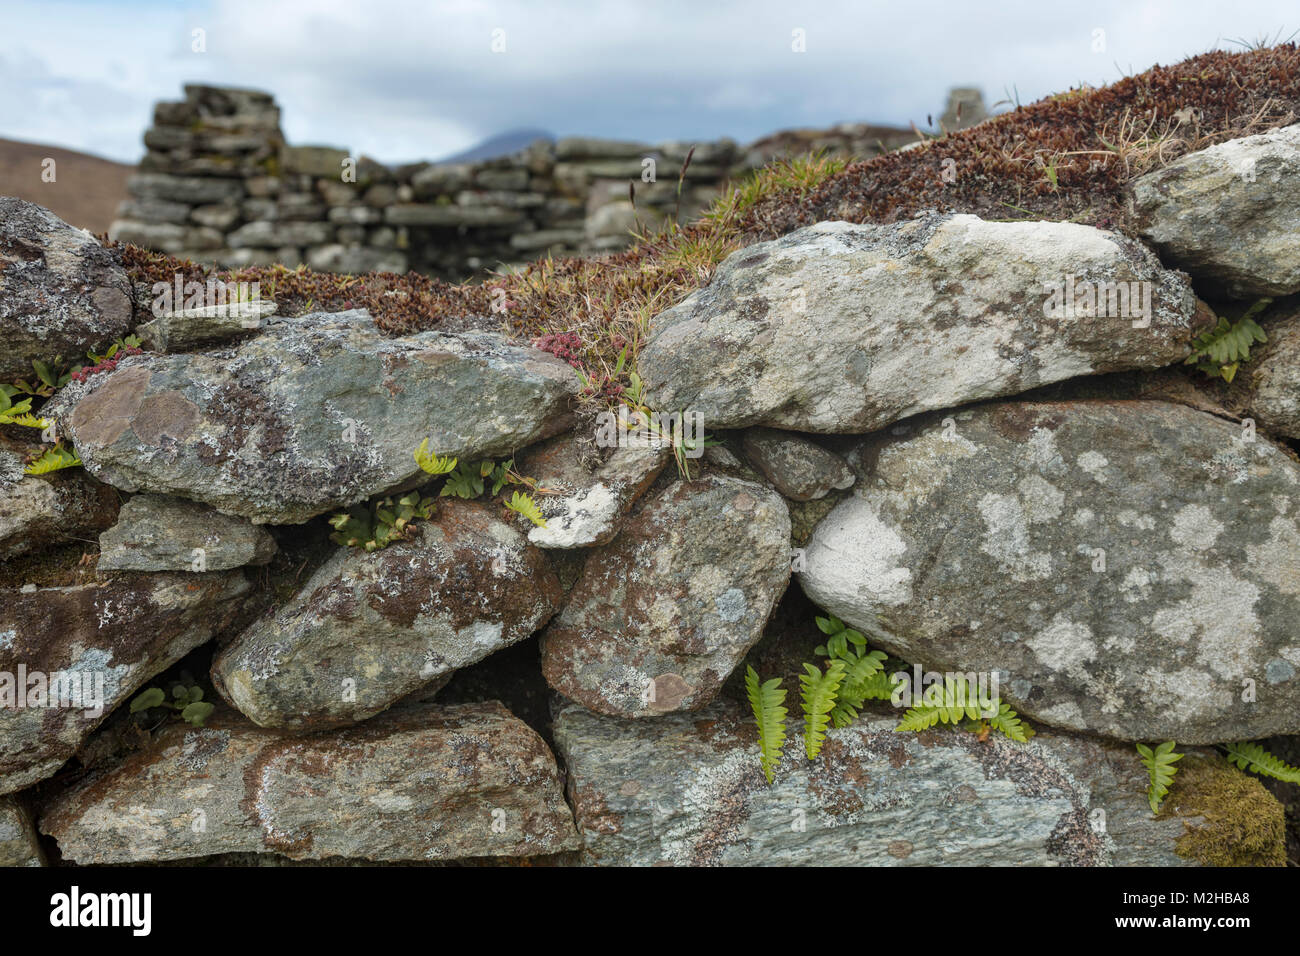 Fougères poussant dans un mur de pierre dans la région de Slievemore village abandonné, l'île d'Achill, Comté de Mayo, Irlande. Banque D'Images